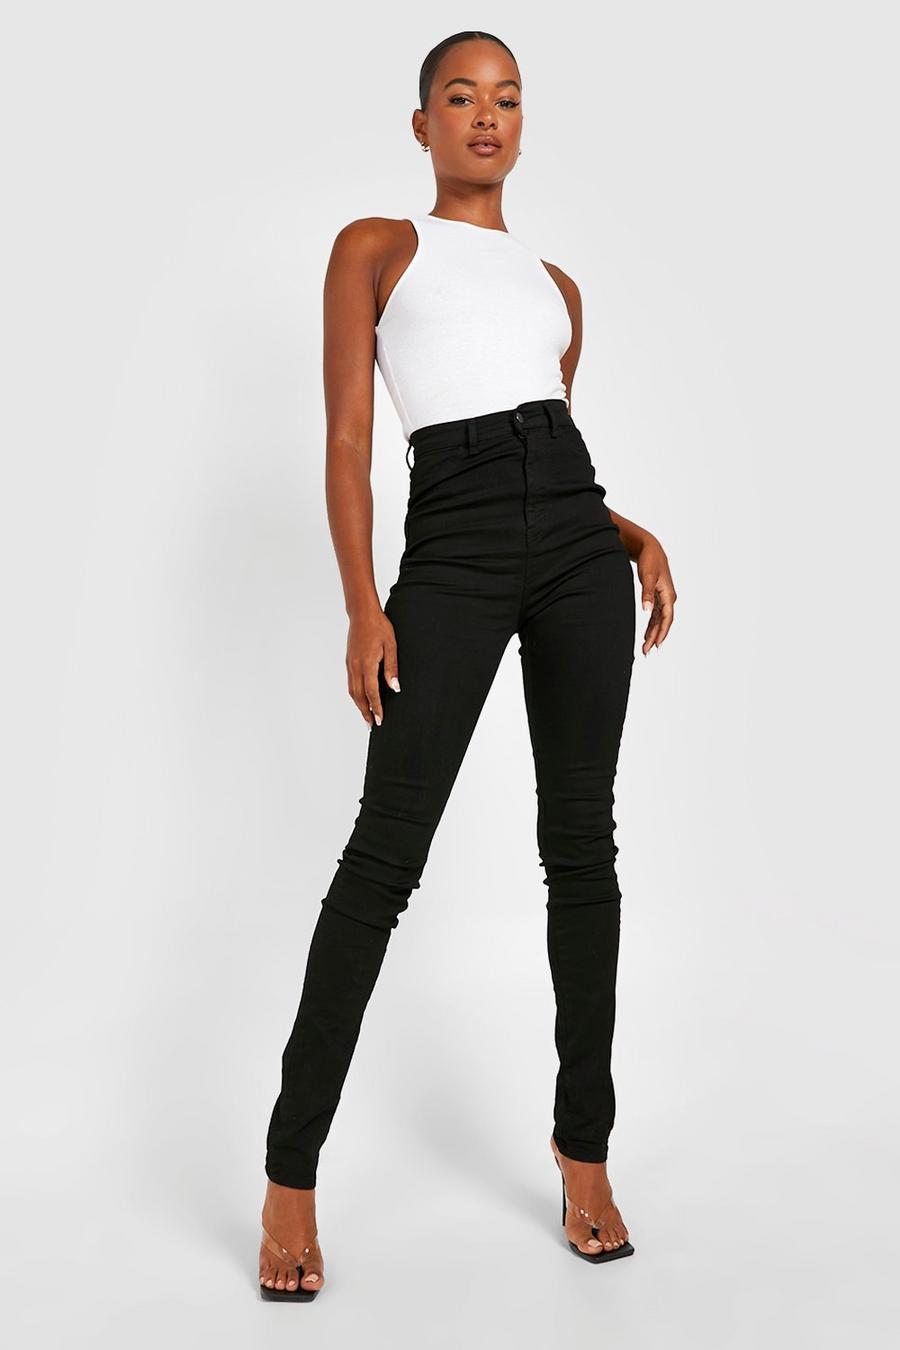 שחור nero סקיני ג'ינס נמתח בגזרת סופר High Waisted לנשים גבוהות